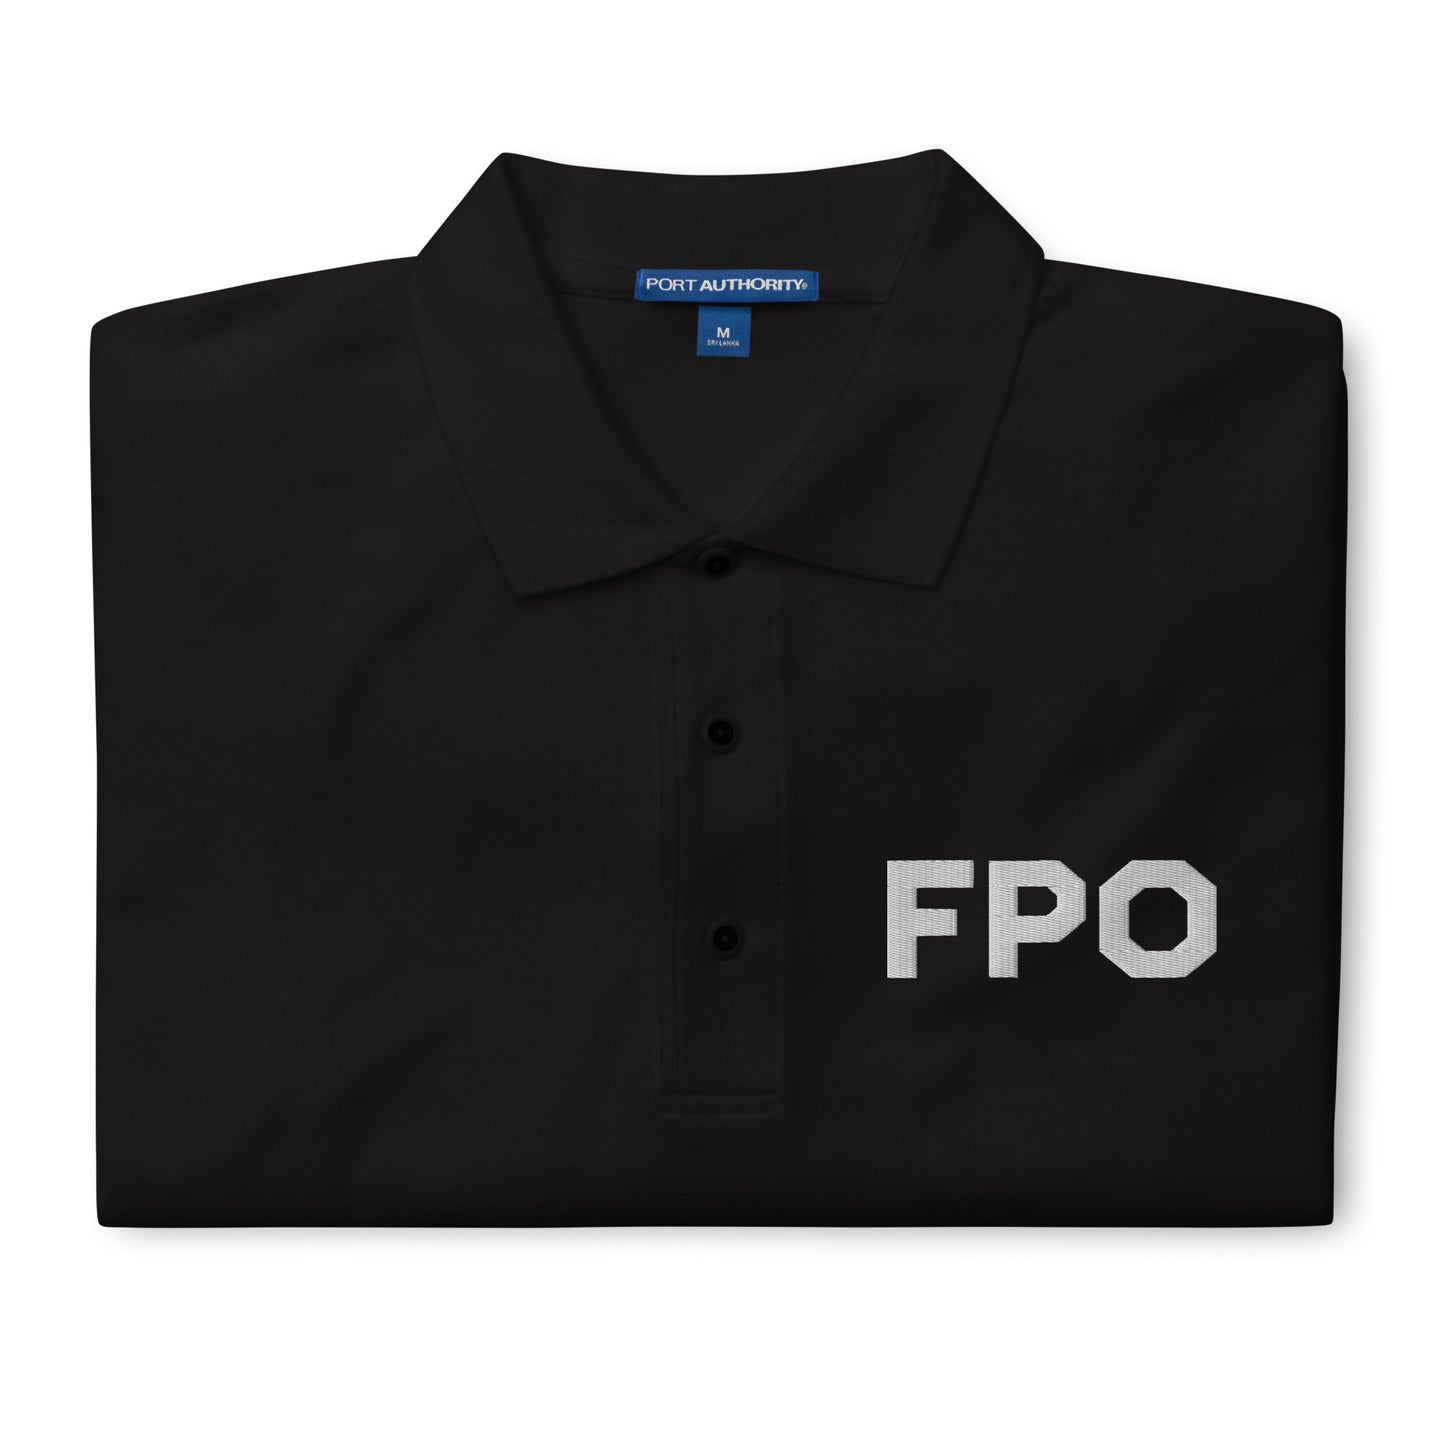 FPO Embroidered Men's Premium Polo